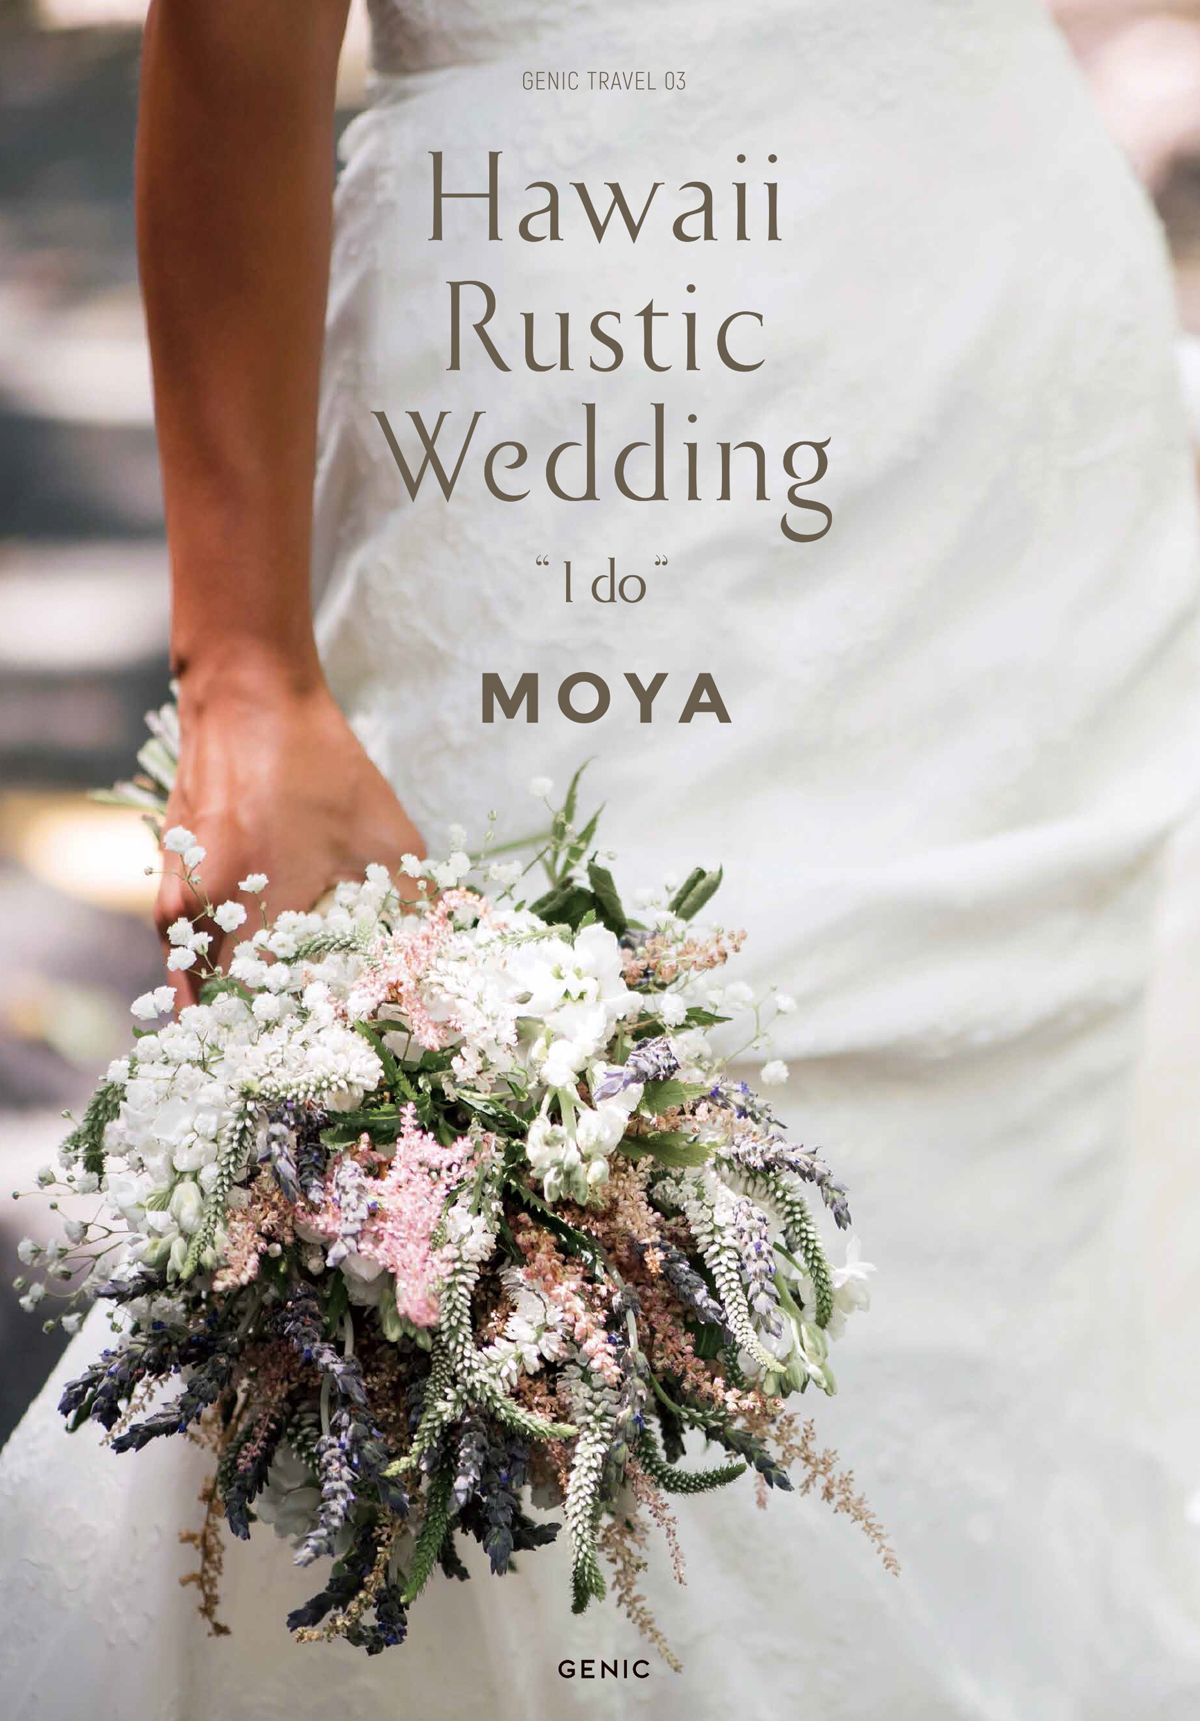 プロトラベラーmoyaの すべてが絵になるハワイ挙式を収録した Hawaii Rustic Wedding I Do 12月22日発売決定 ミツバチワークス株式会社のプレスリリース